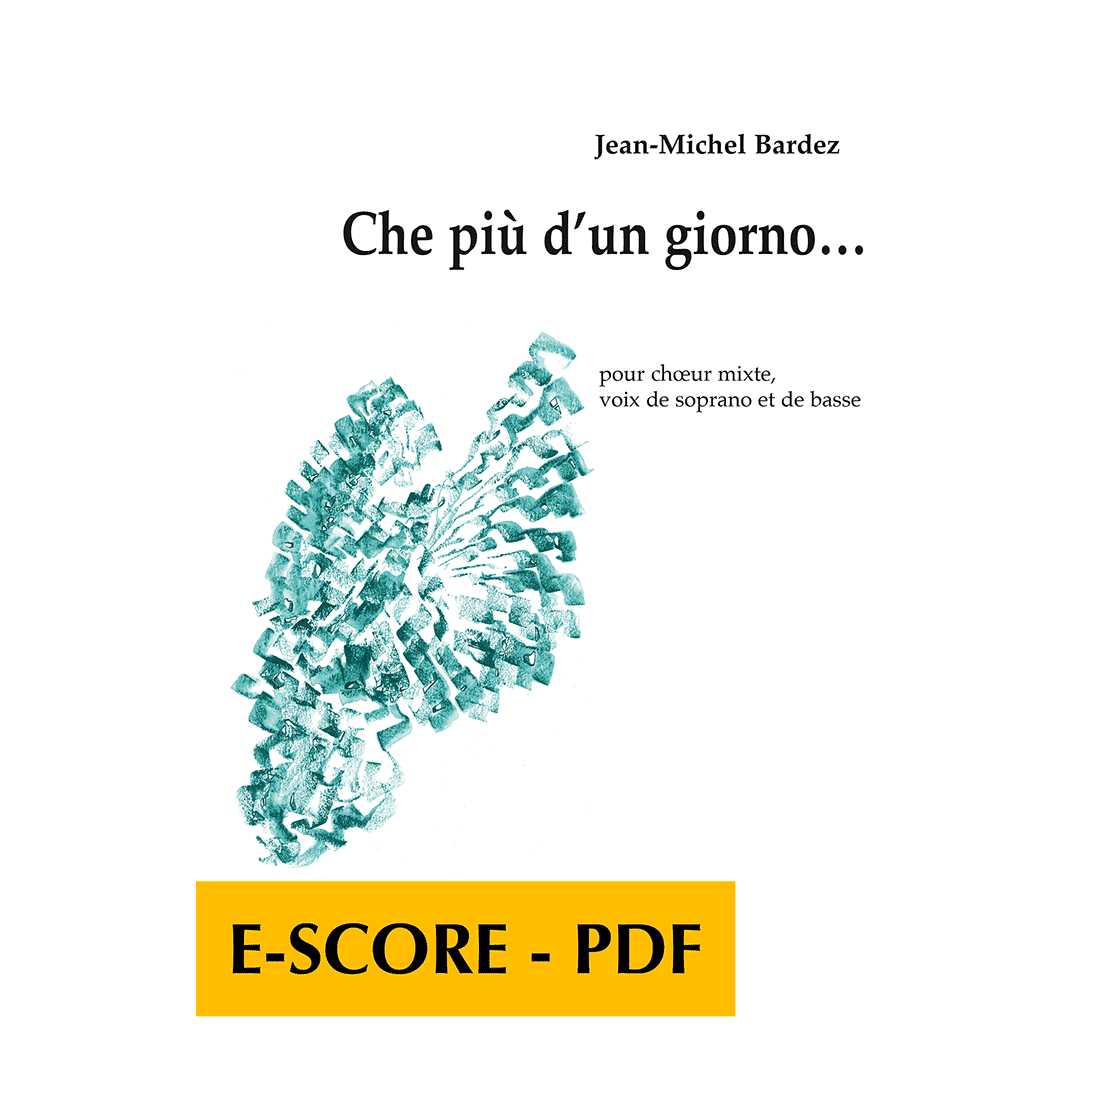 Che piu d'un giorno for mixed choir, soprano and bass voices - E-score PDF